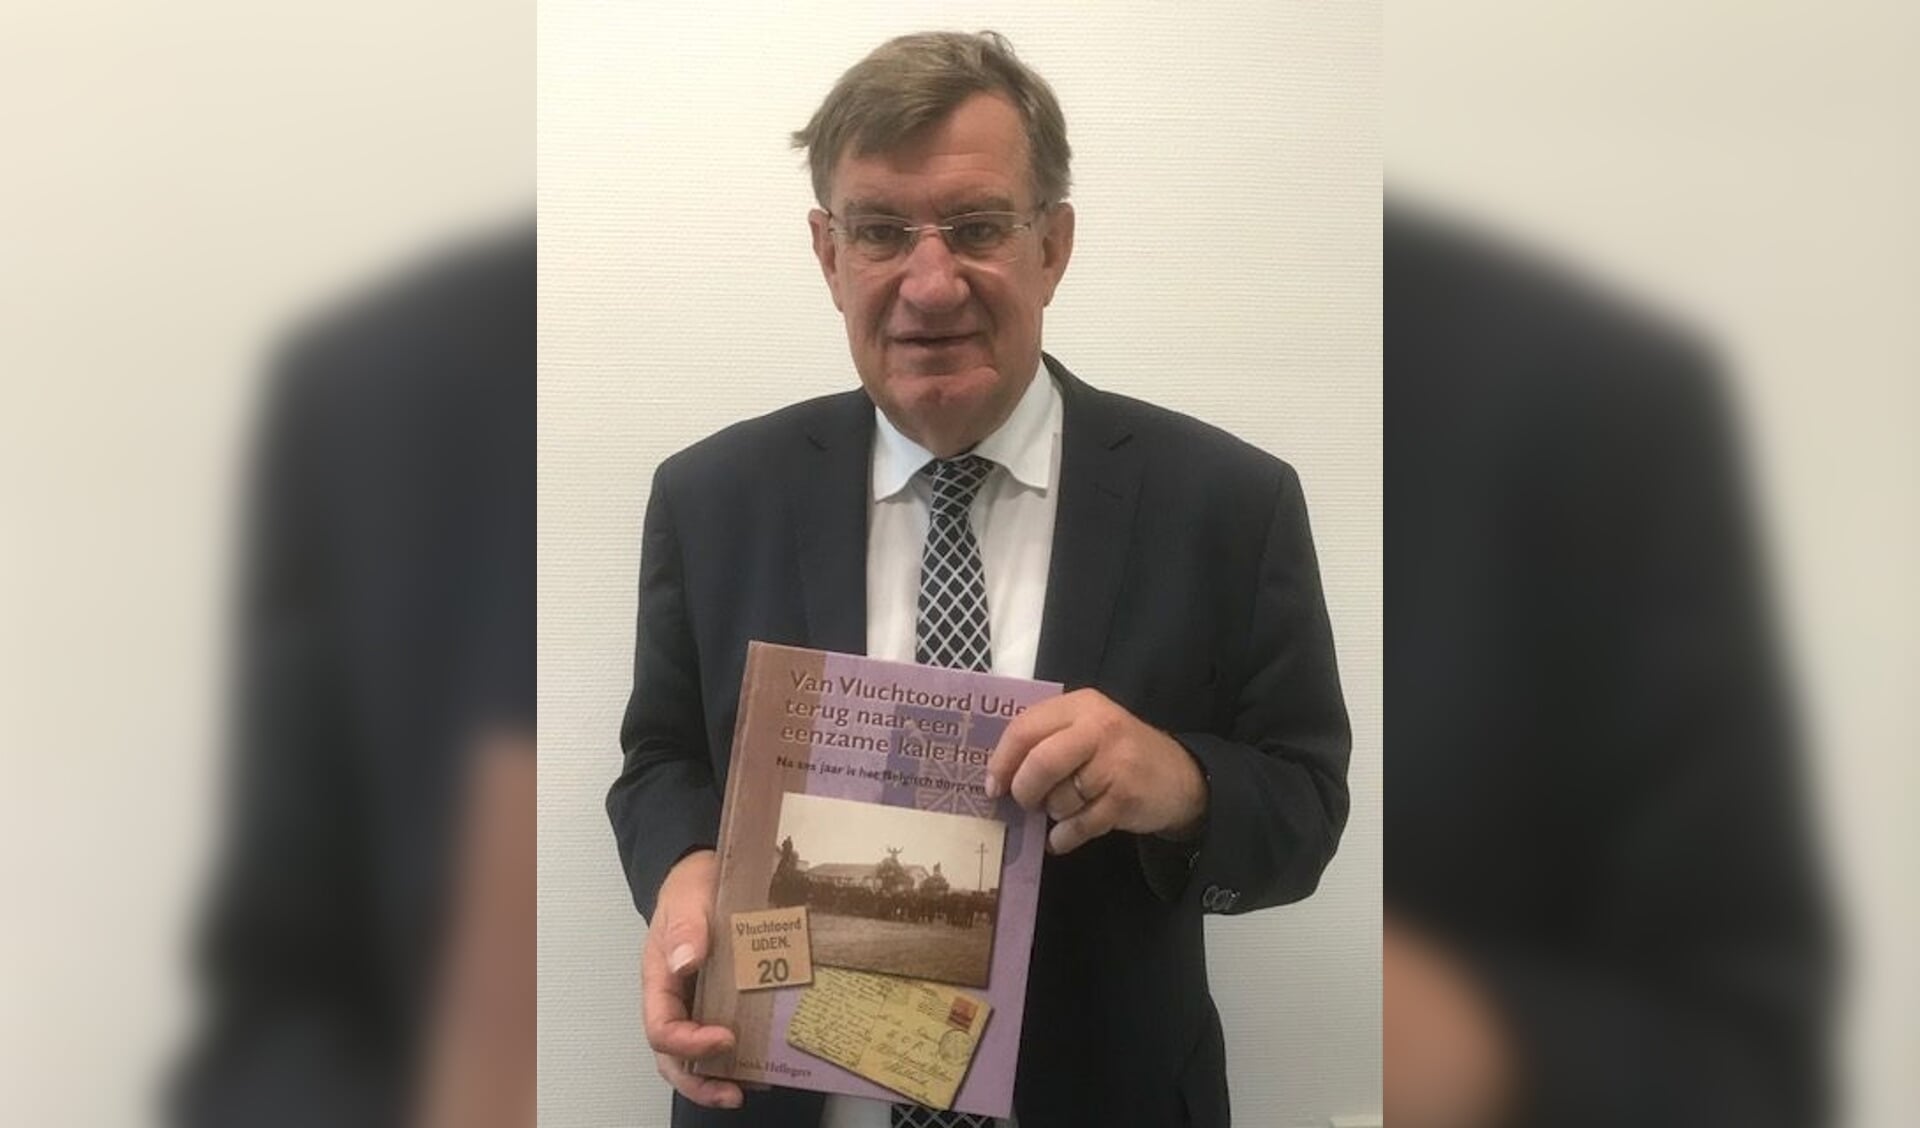 Het boek dat de burgemeester schreef, verscheen in 2018.